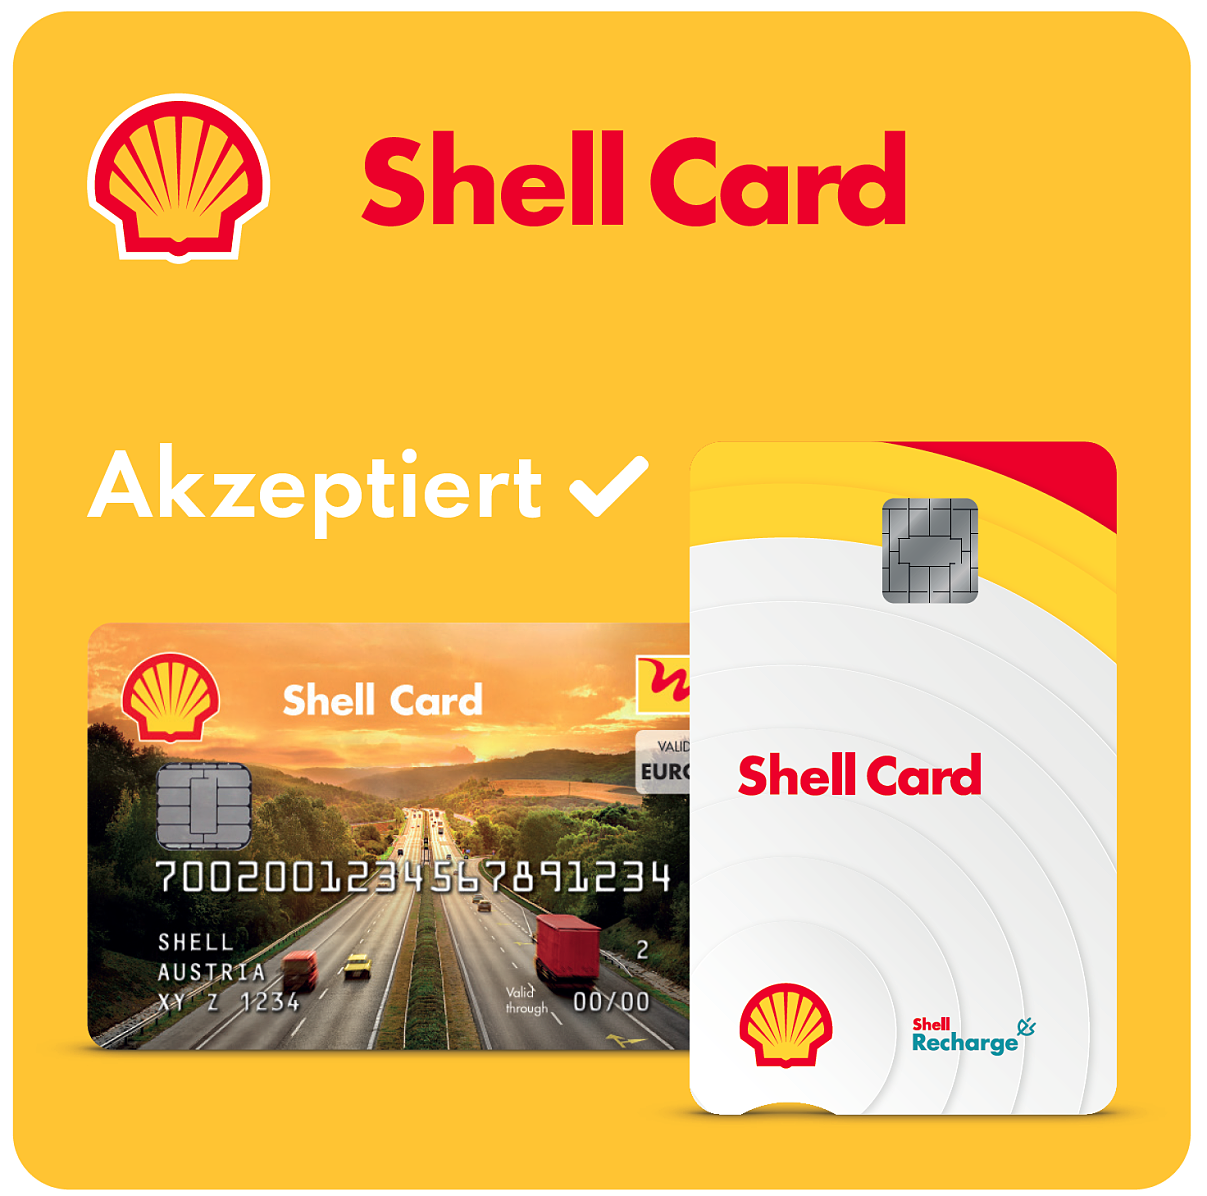 Ab jetzt bei allen Turmöl-Tankstellen möglich: Bezahlen mittels Shell Card